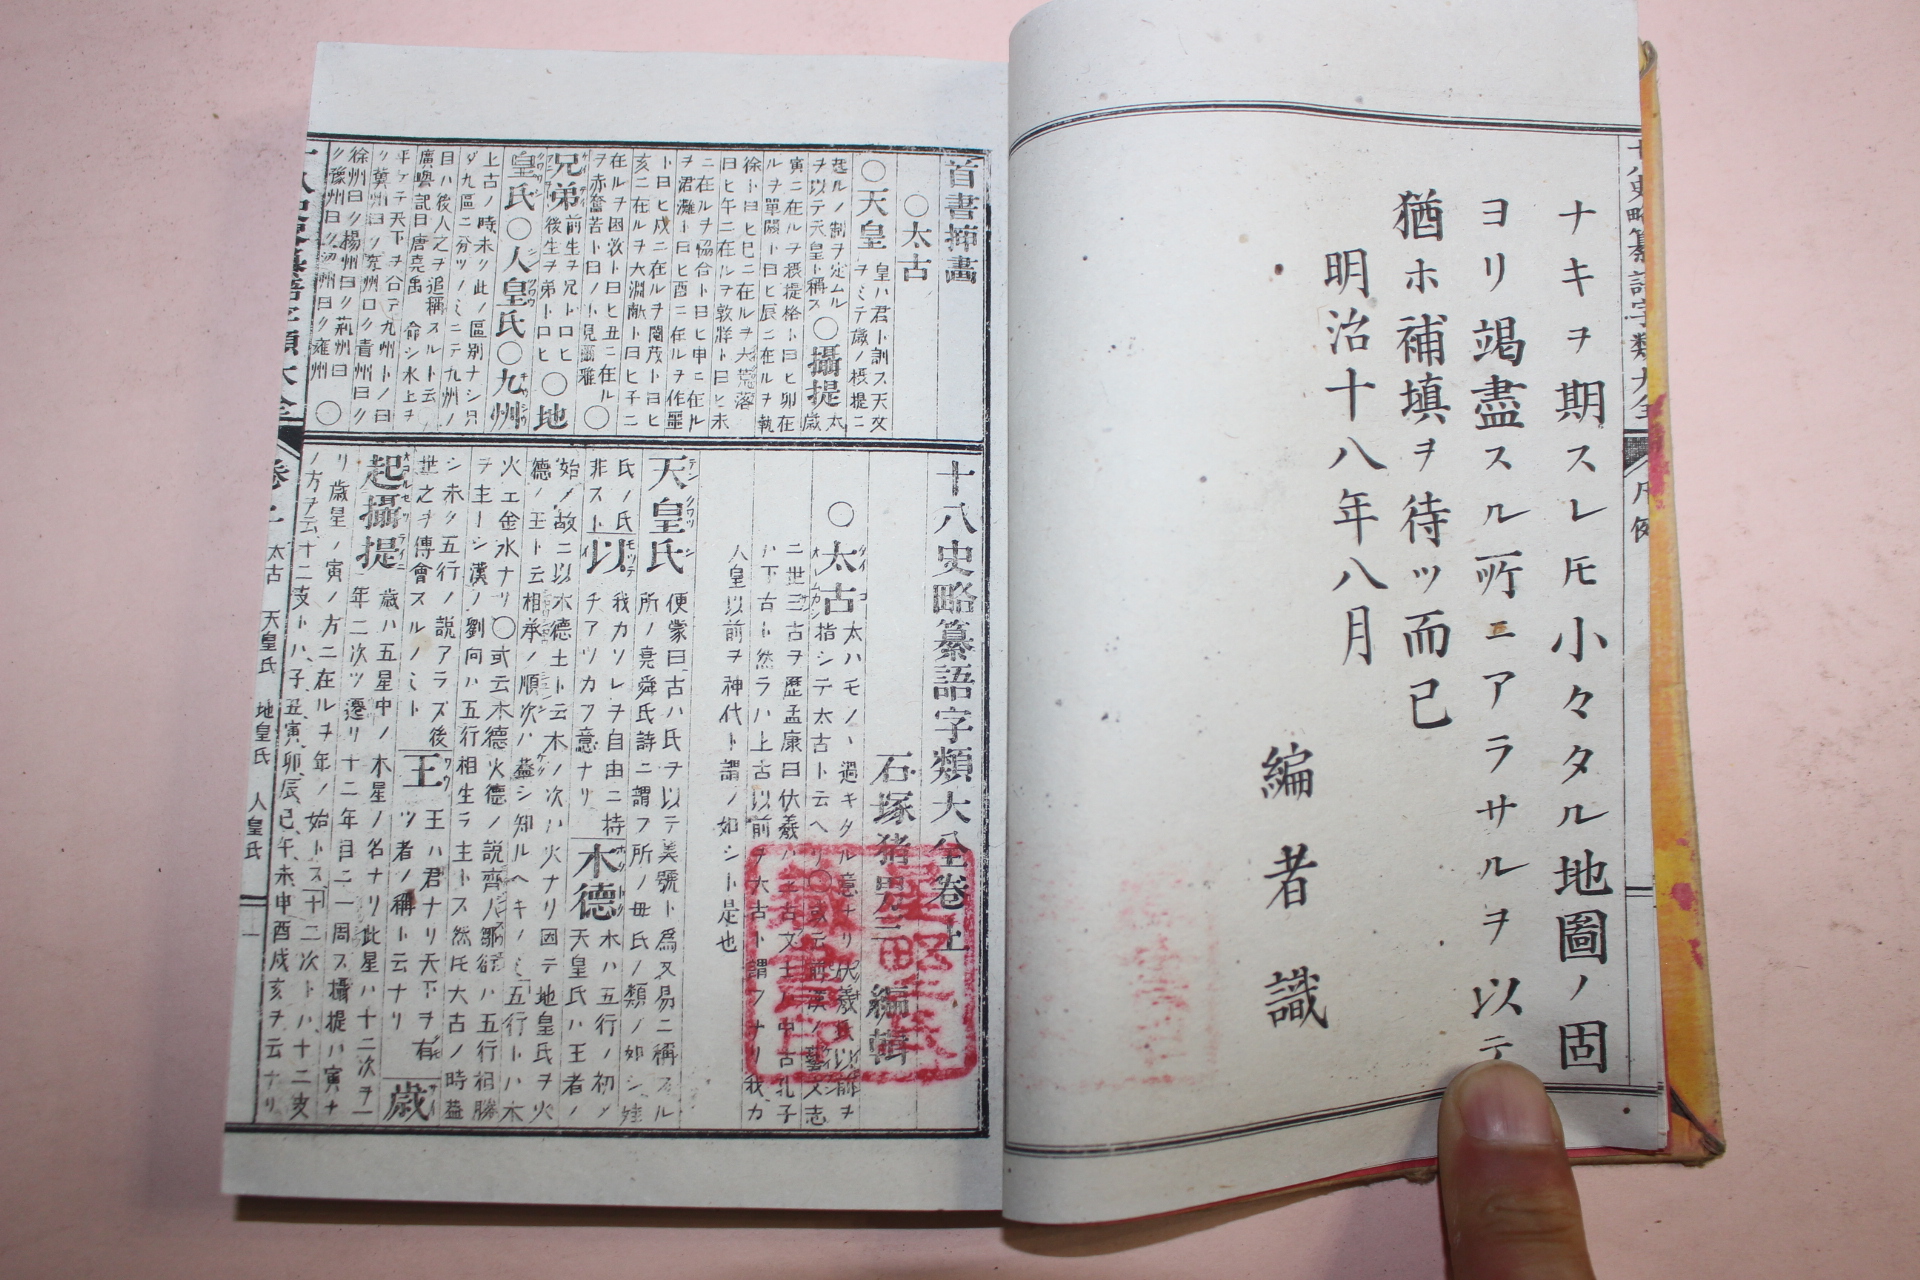 1885년(명치18년) 일본간행 오두주석십팔사략찬어자류(鼇頭註釋十八史略纂語字類) 3책완질